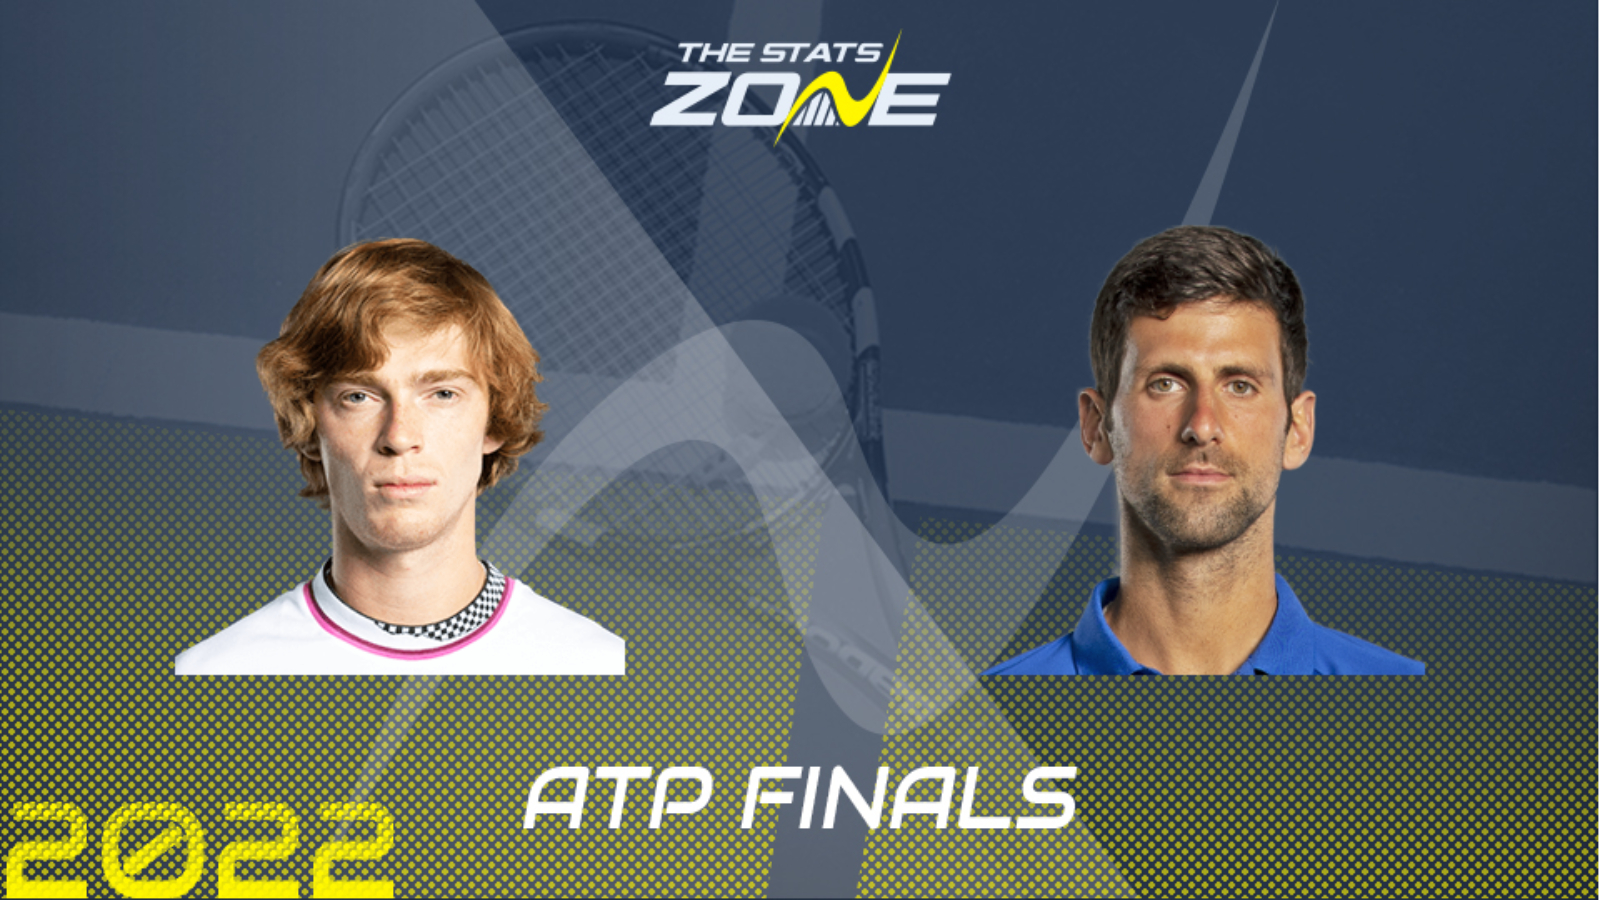 Andrey Rublev vs Novak Djokovic – Group Stage